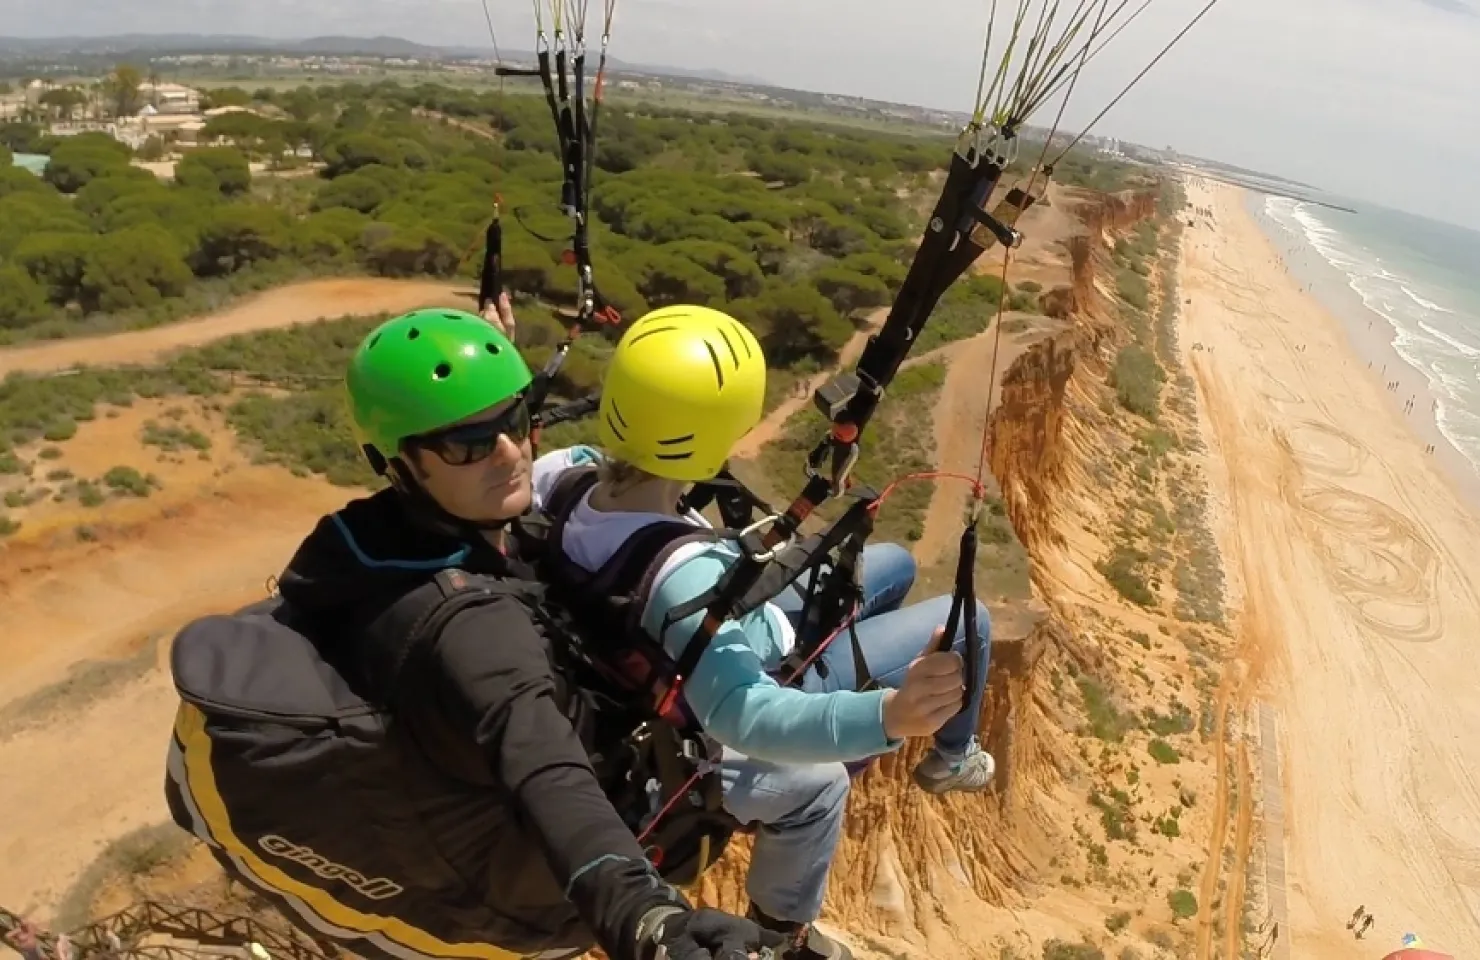 Paragliding experience in Vilamoura - Skydive Algarve